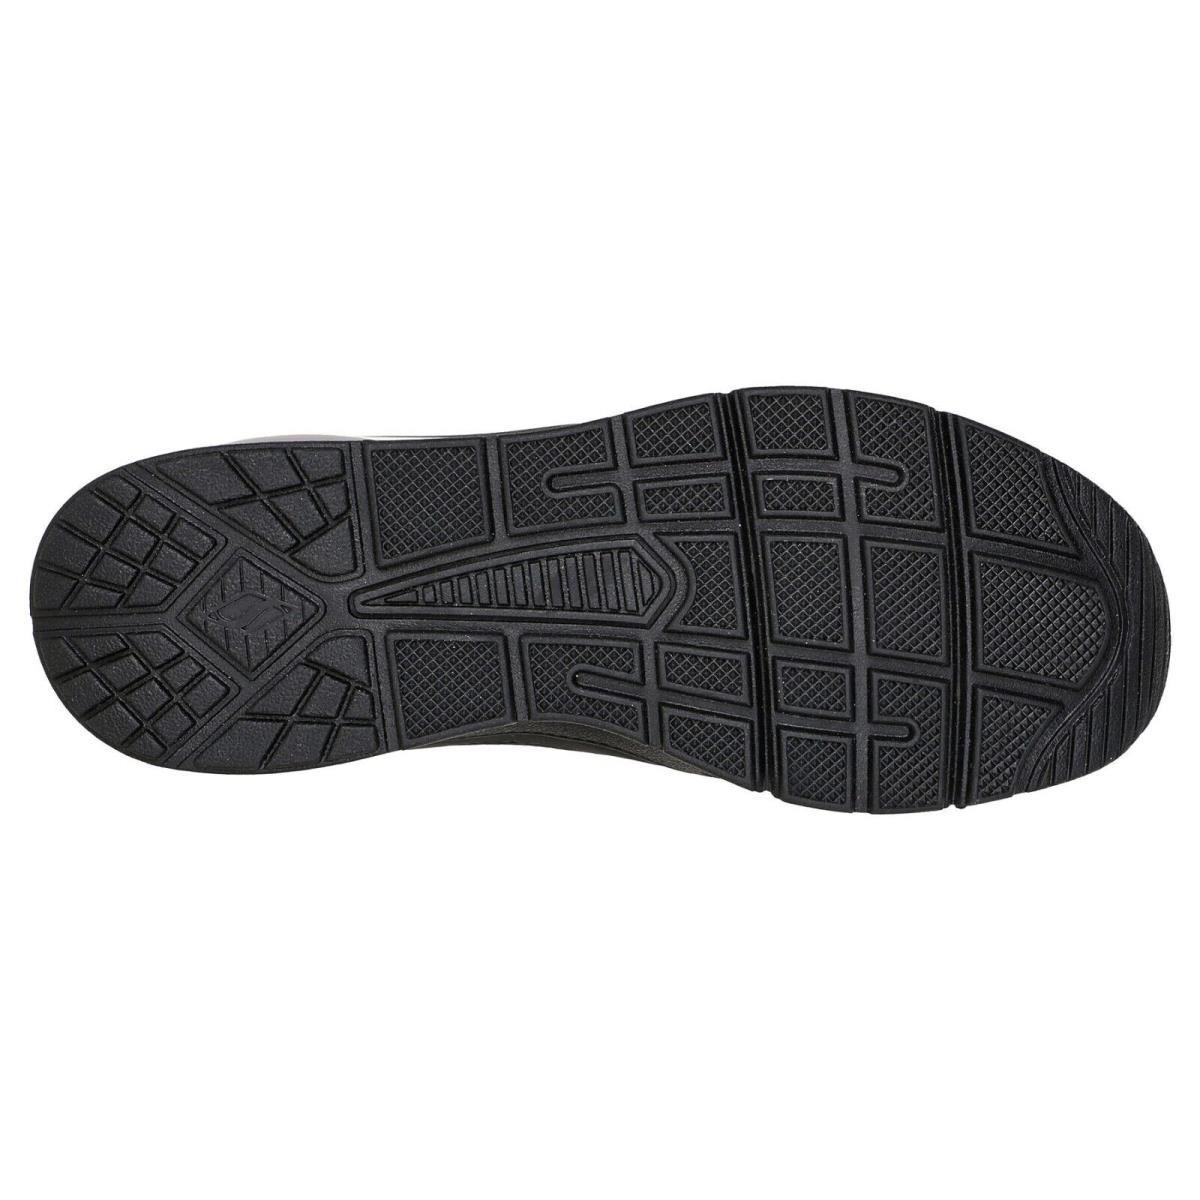 Skechers shoes Uno Traveler - Black 6